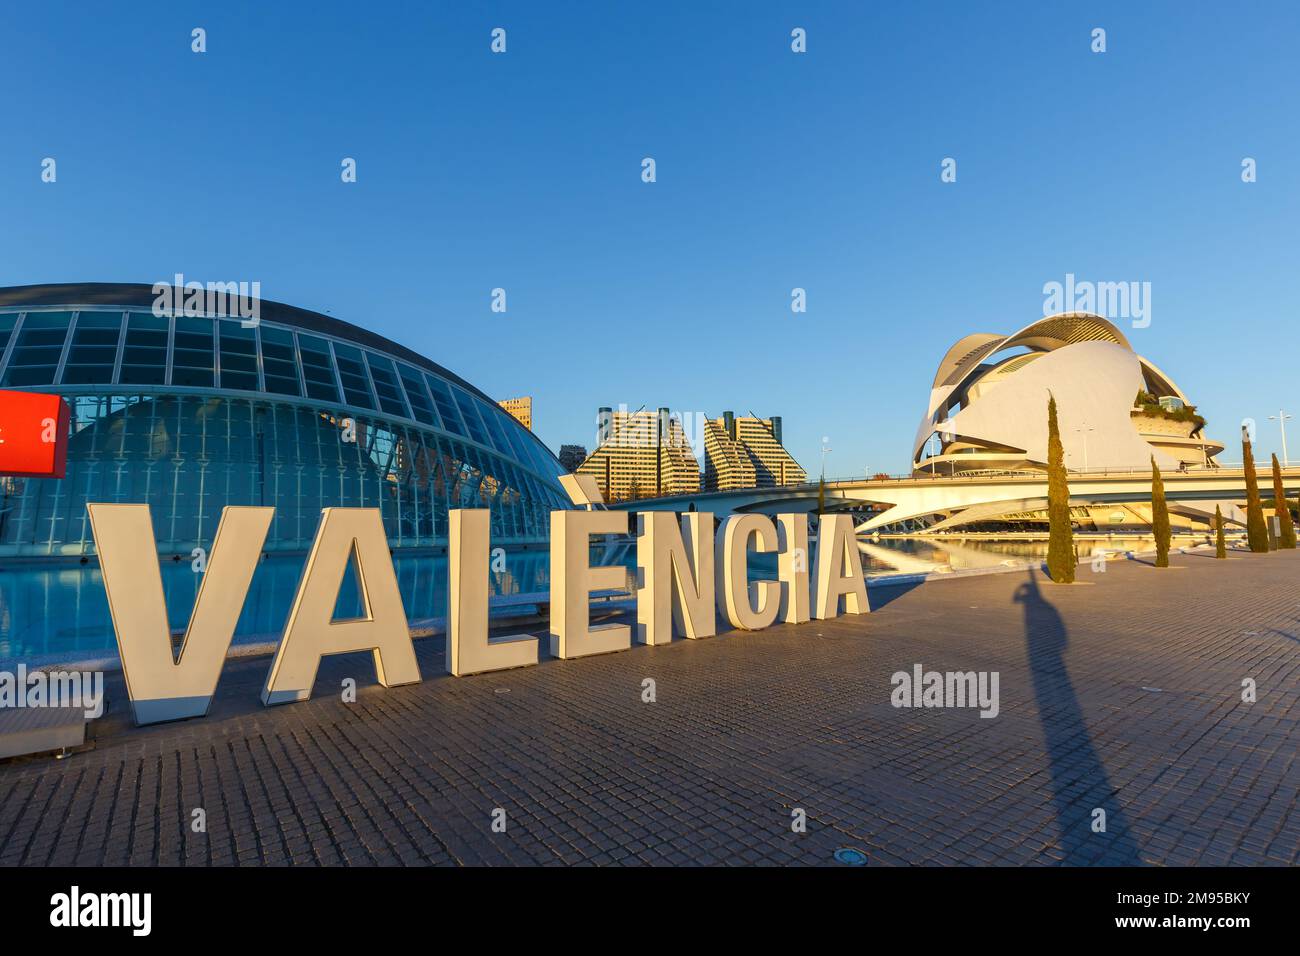 Valence, Espagne - 18 février 2022: Ciutat des Arts i les Ciencies Architecture moderne de Santiago Calatrava à Valence, Espagne. Banque D'Images